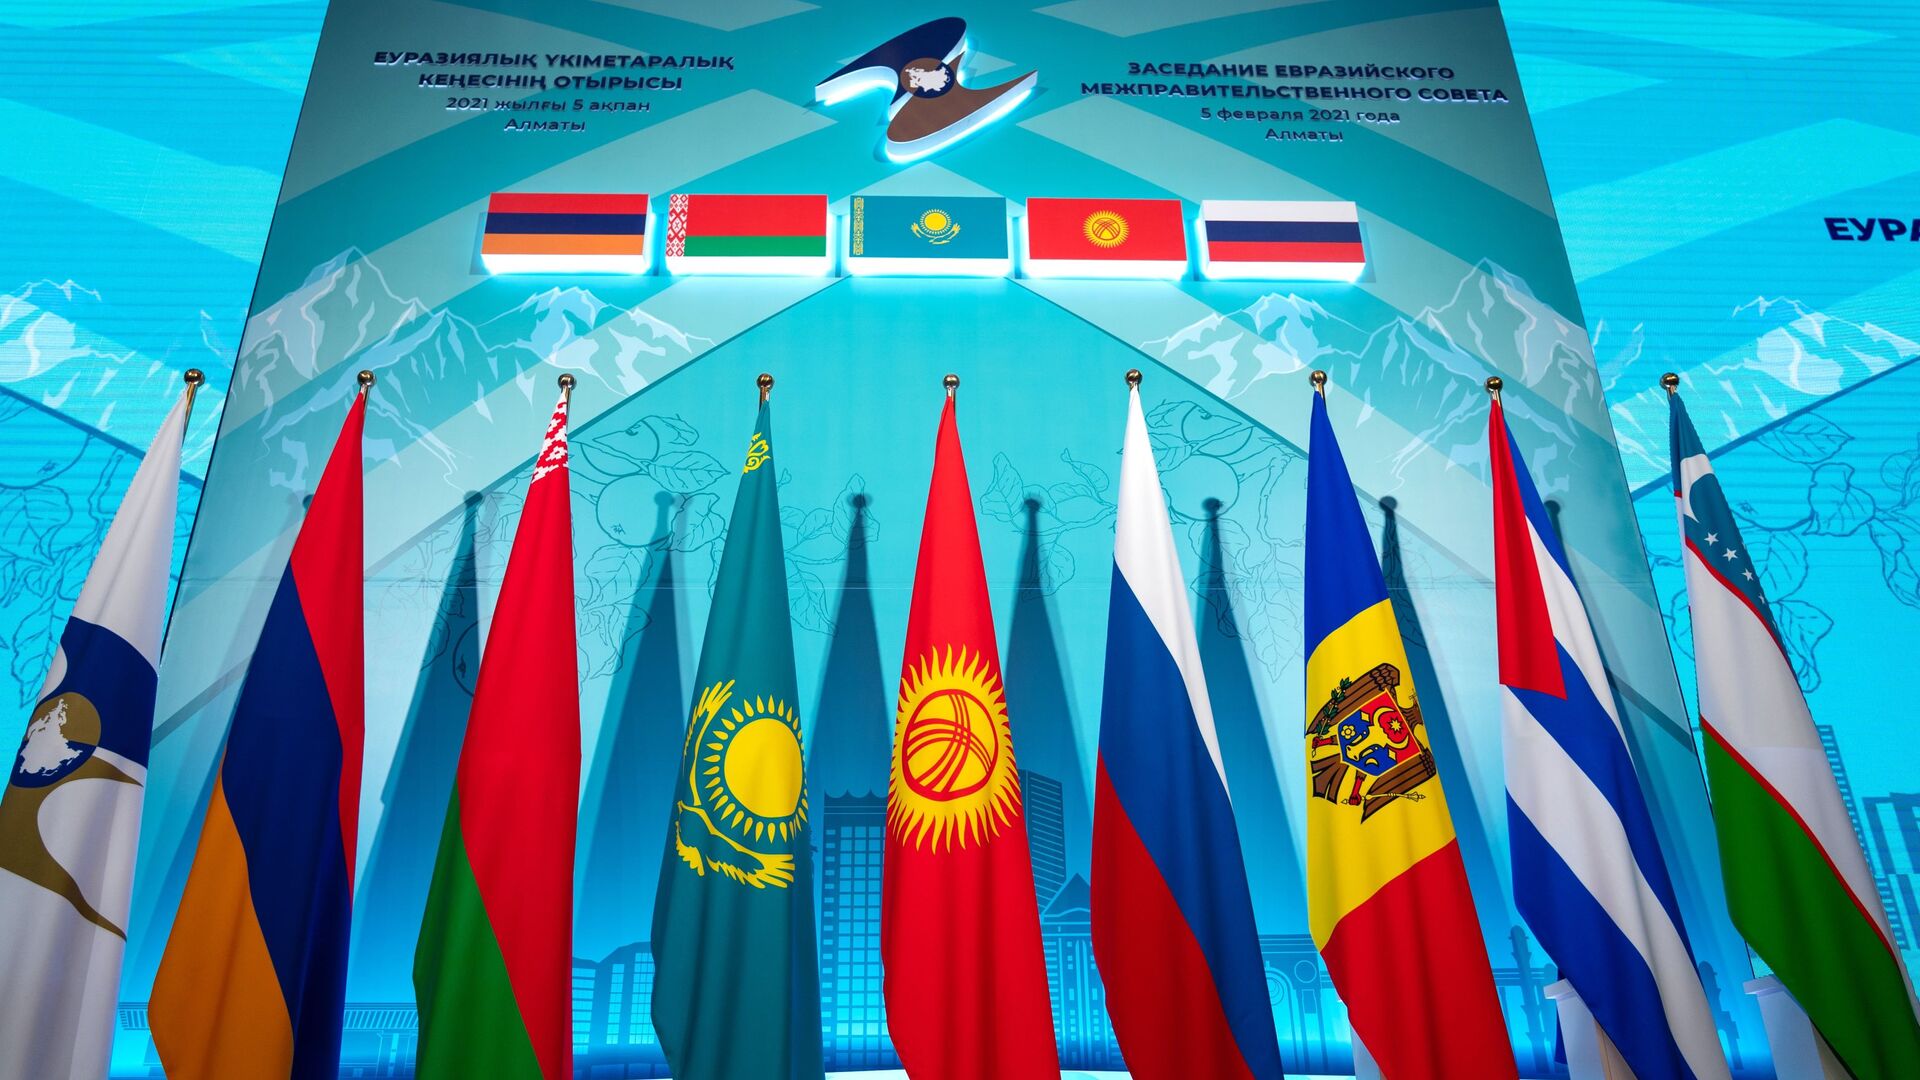 Заседание Евразийского межправительственного совета стран ЕАЭС - Sputnik Азербайджан, 1920, 27.04.2021